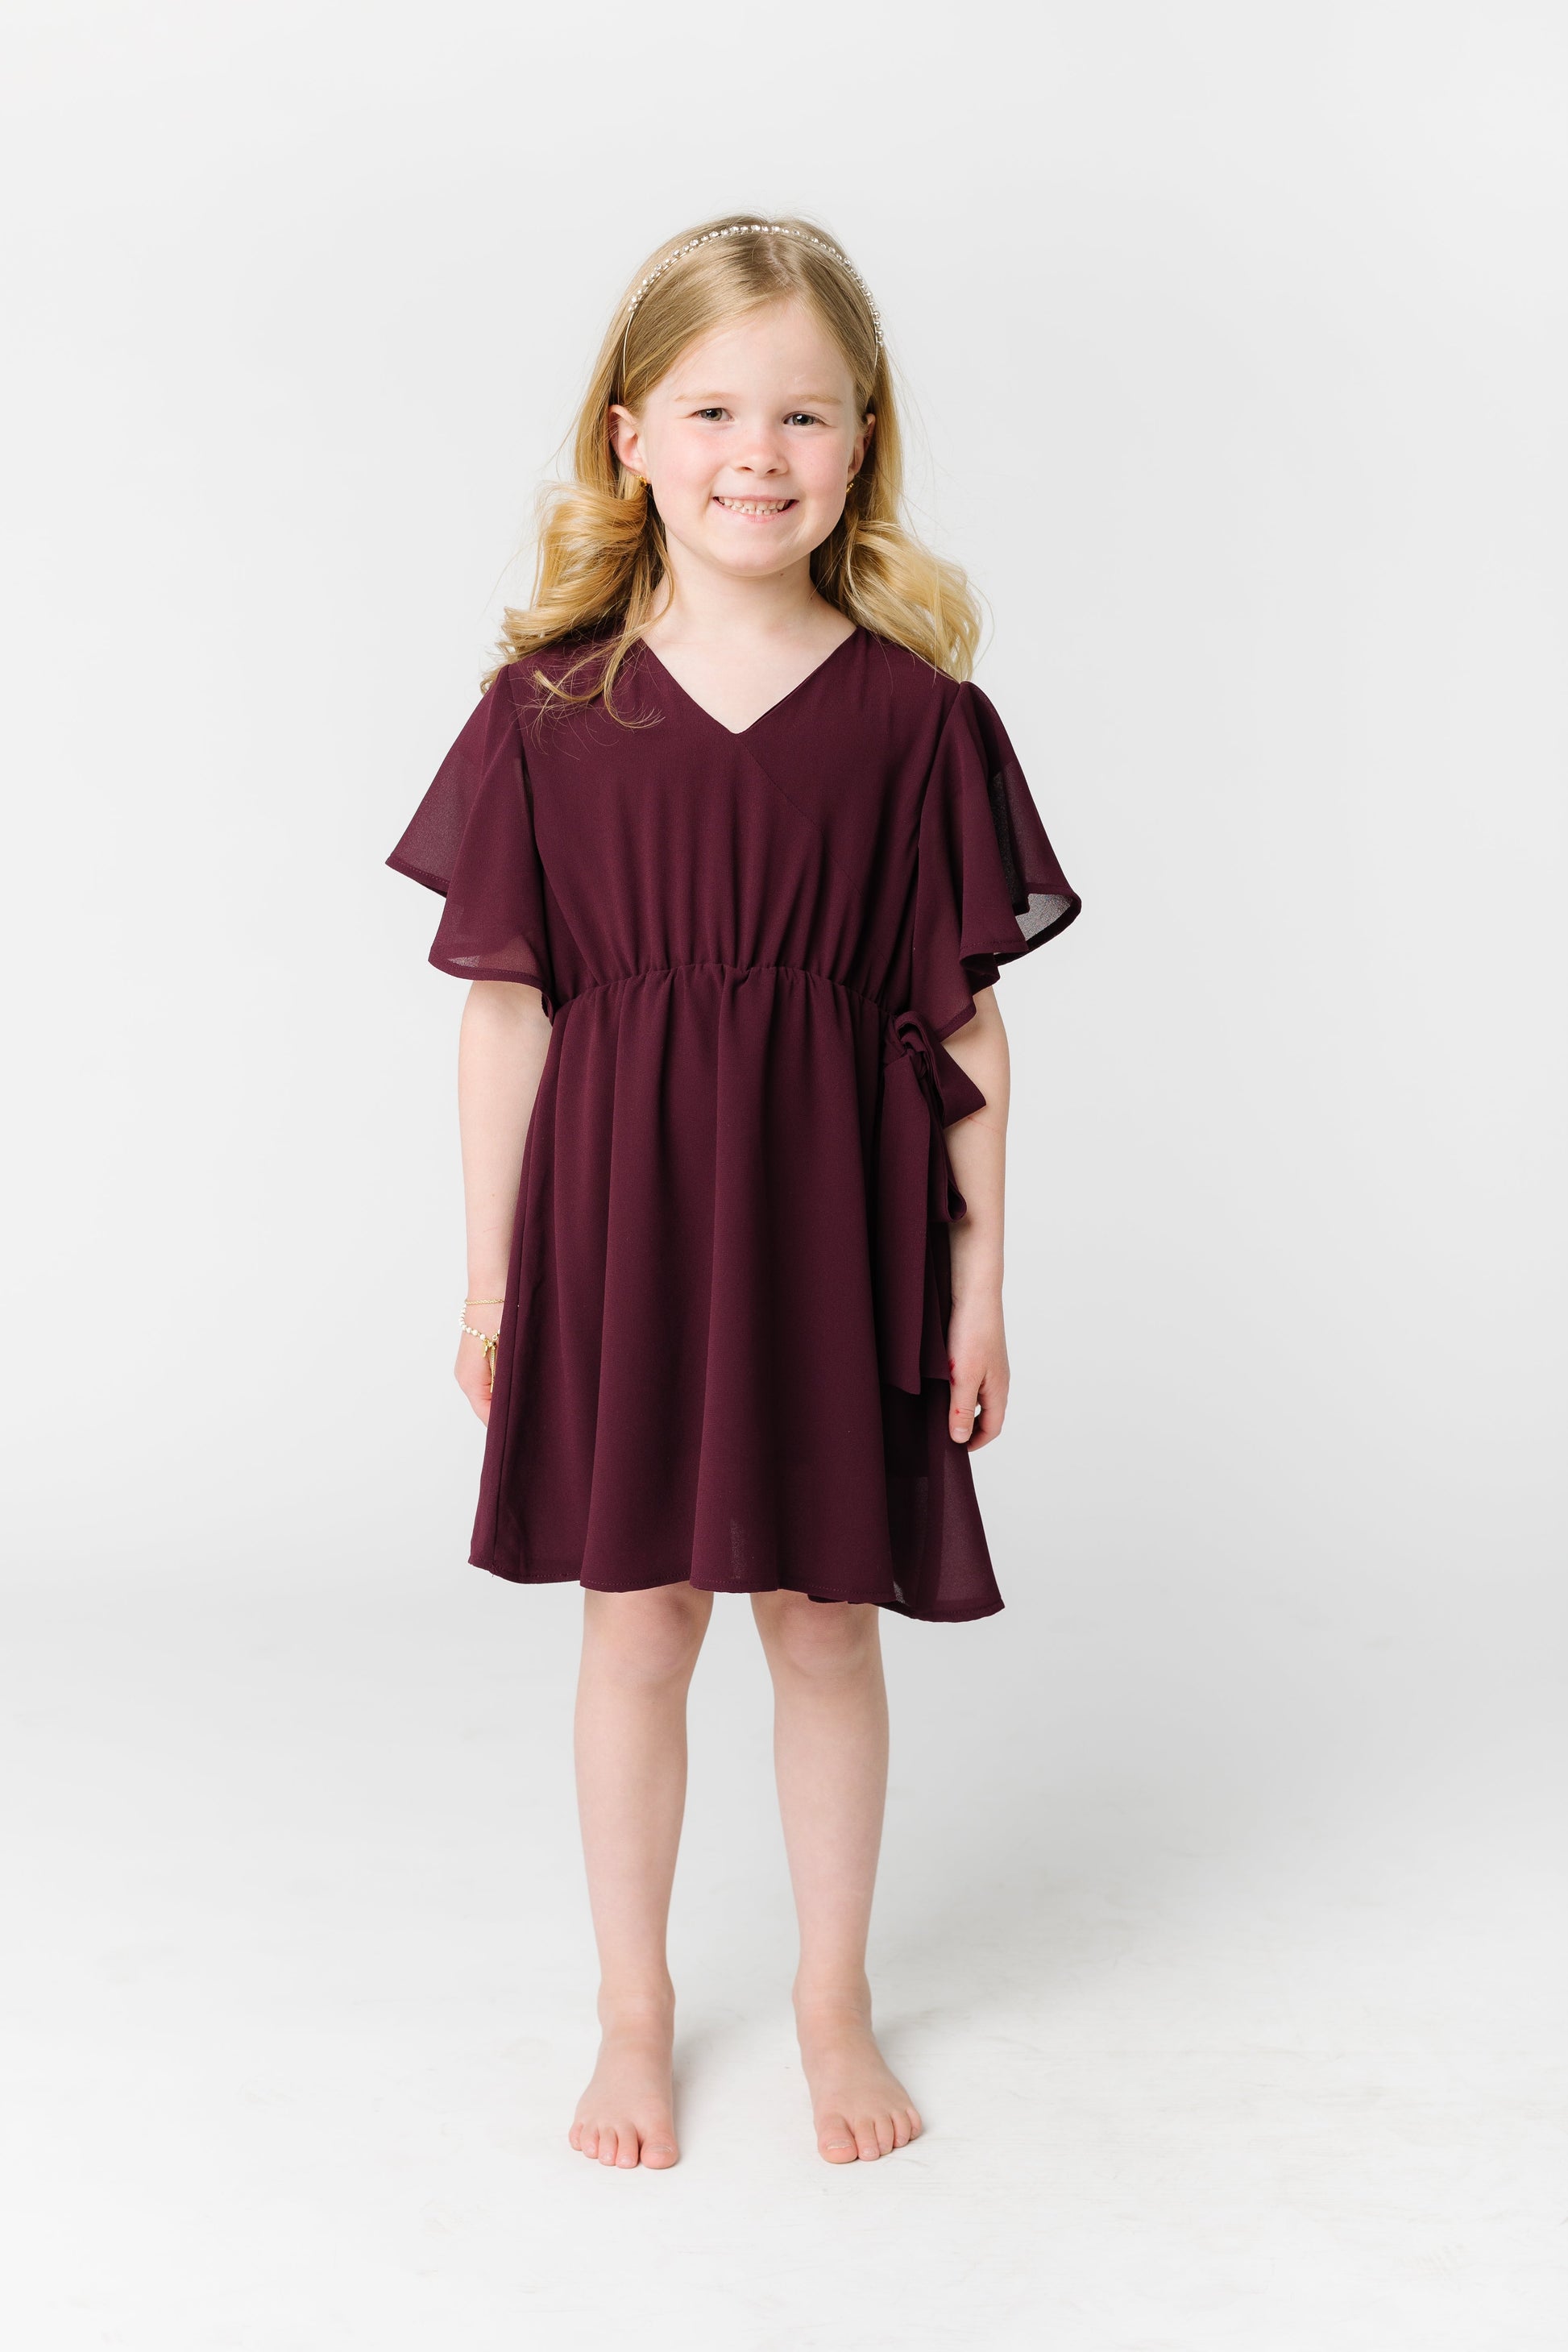 Little Naples Flutter Sleeve Girl's Dress - Wine GIRL'S DRESS Arbor 